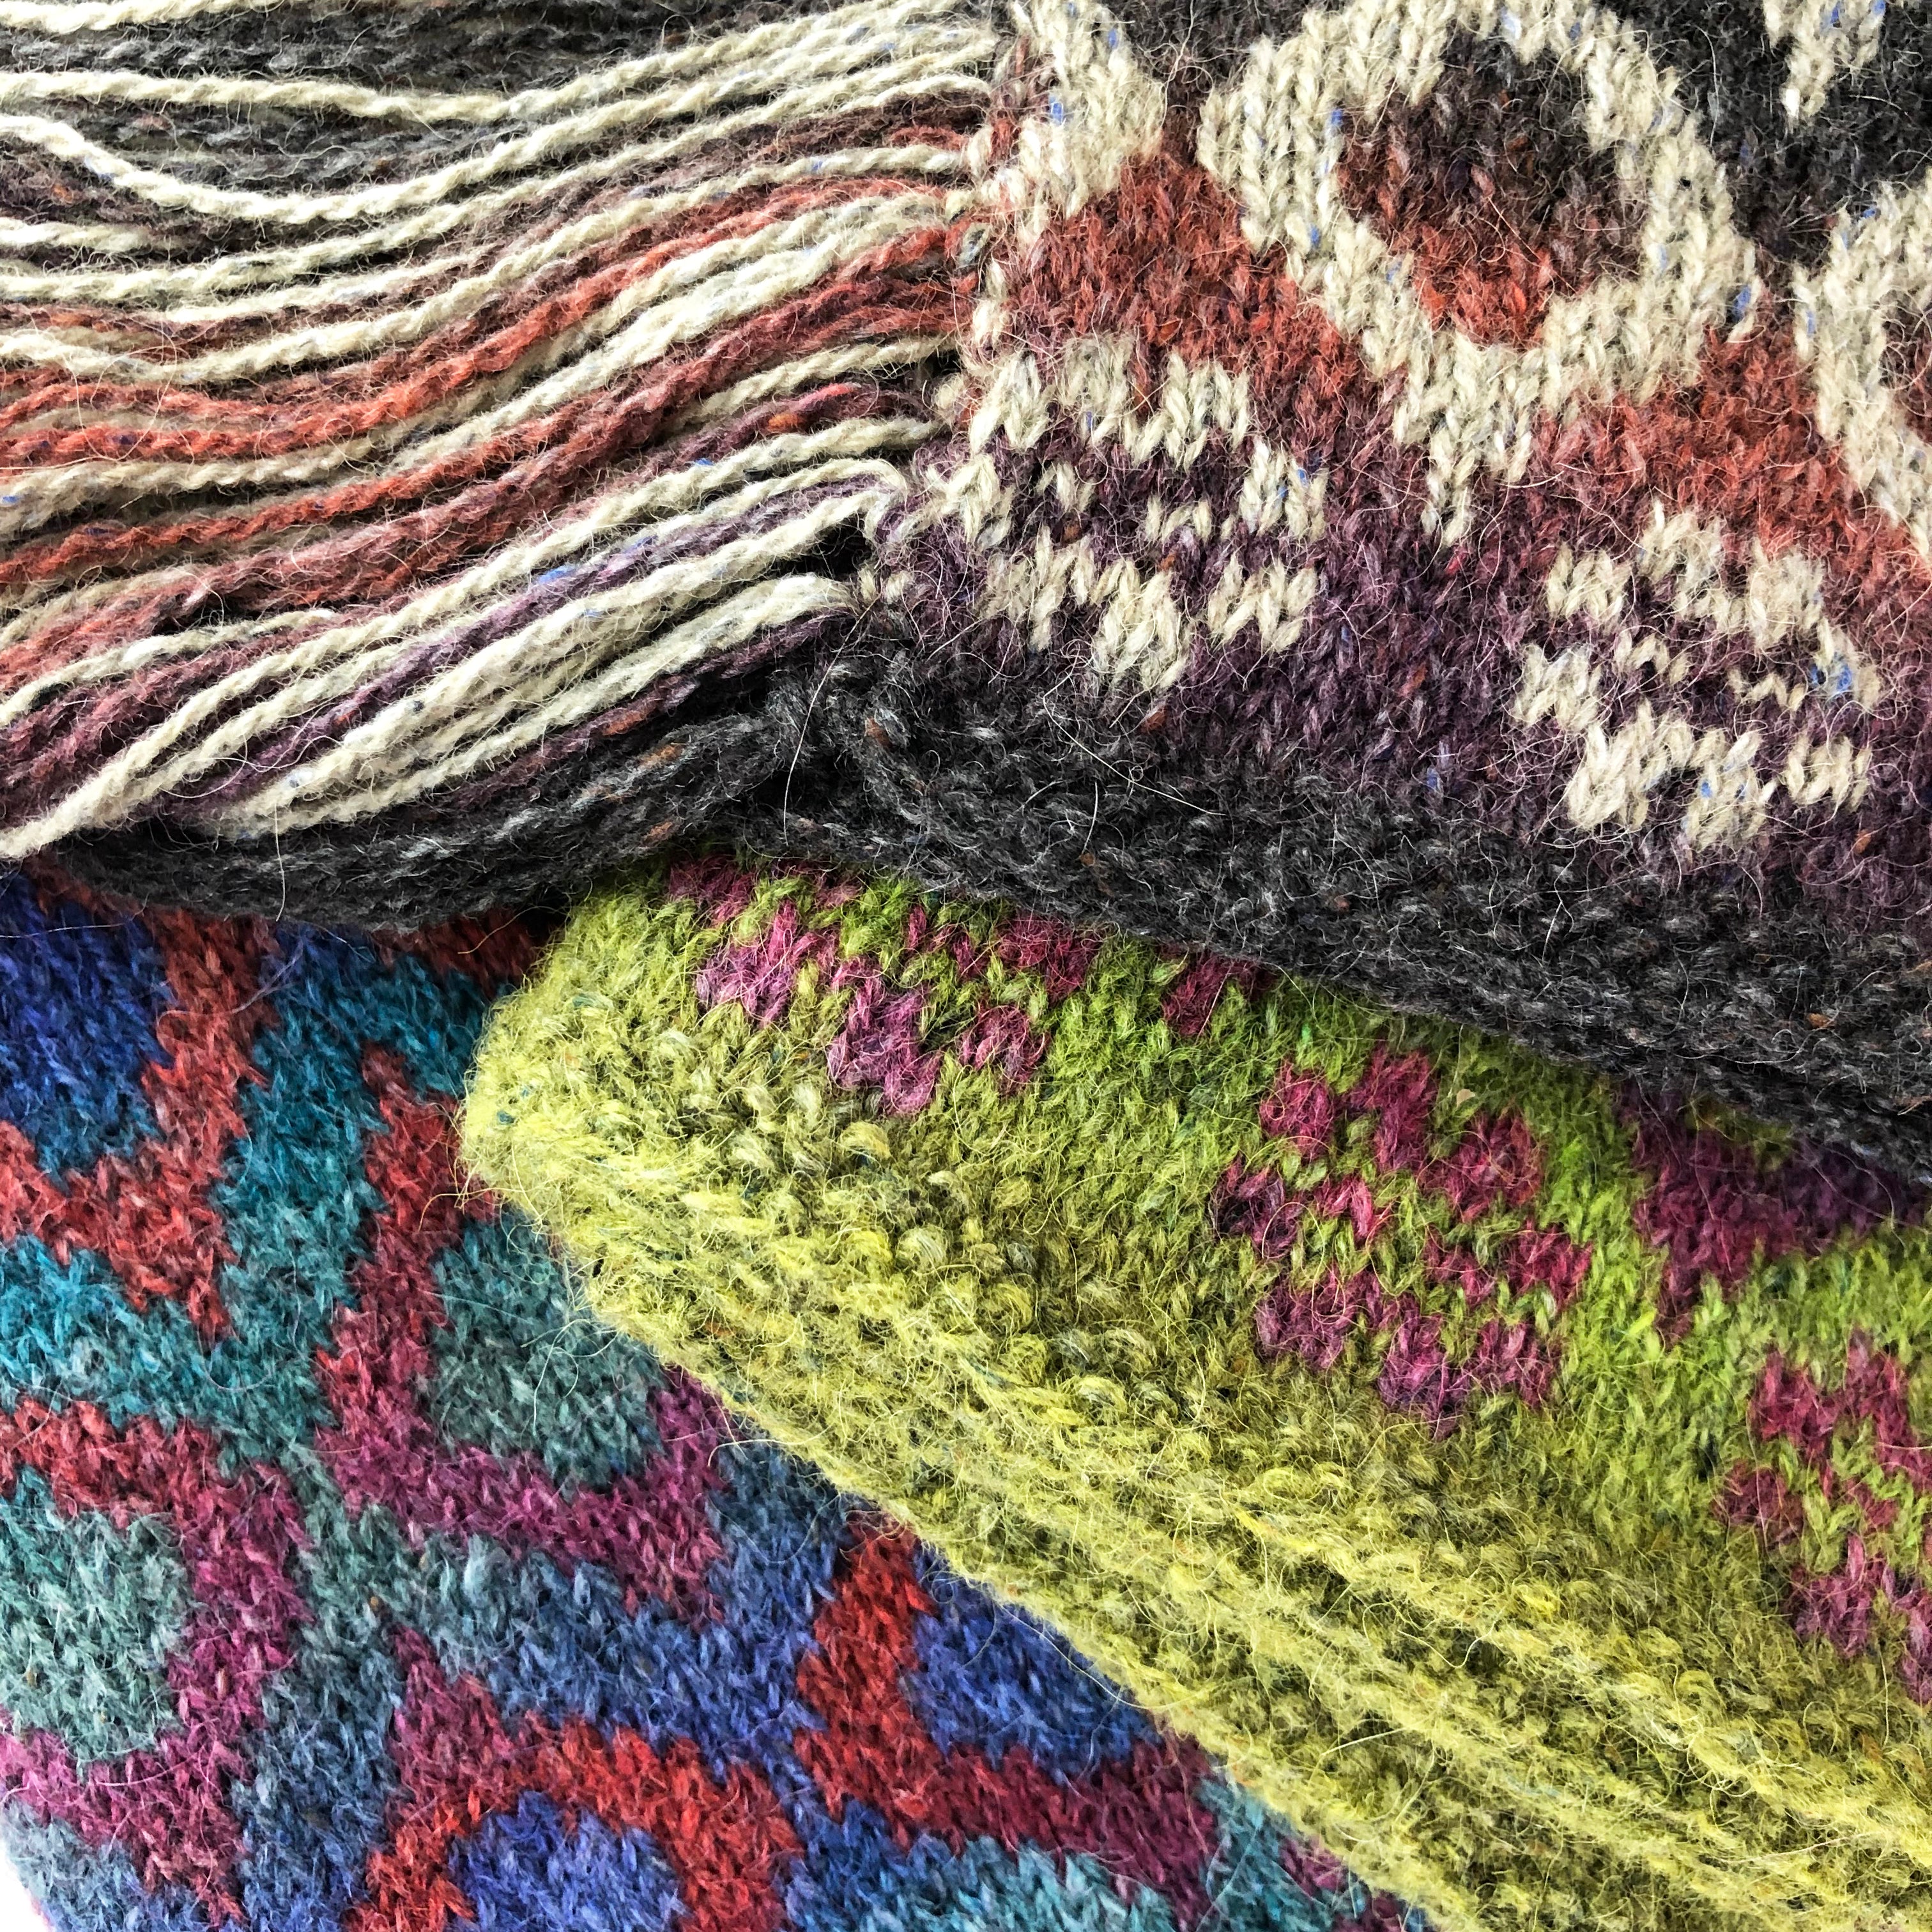 Medina Scarf Knitting Tips from designer, Juliet Bernard